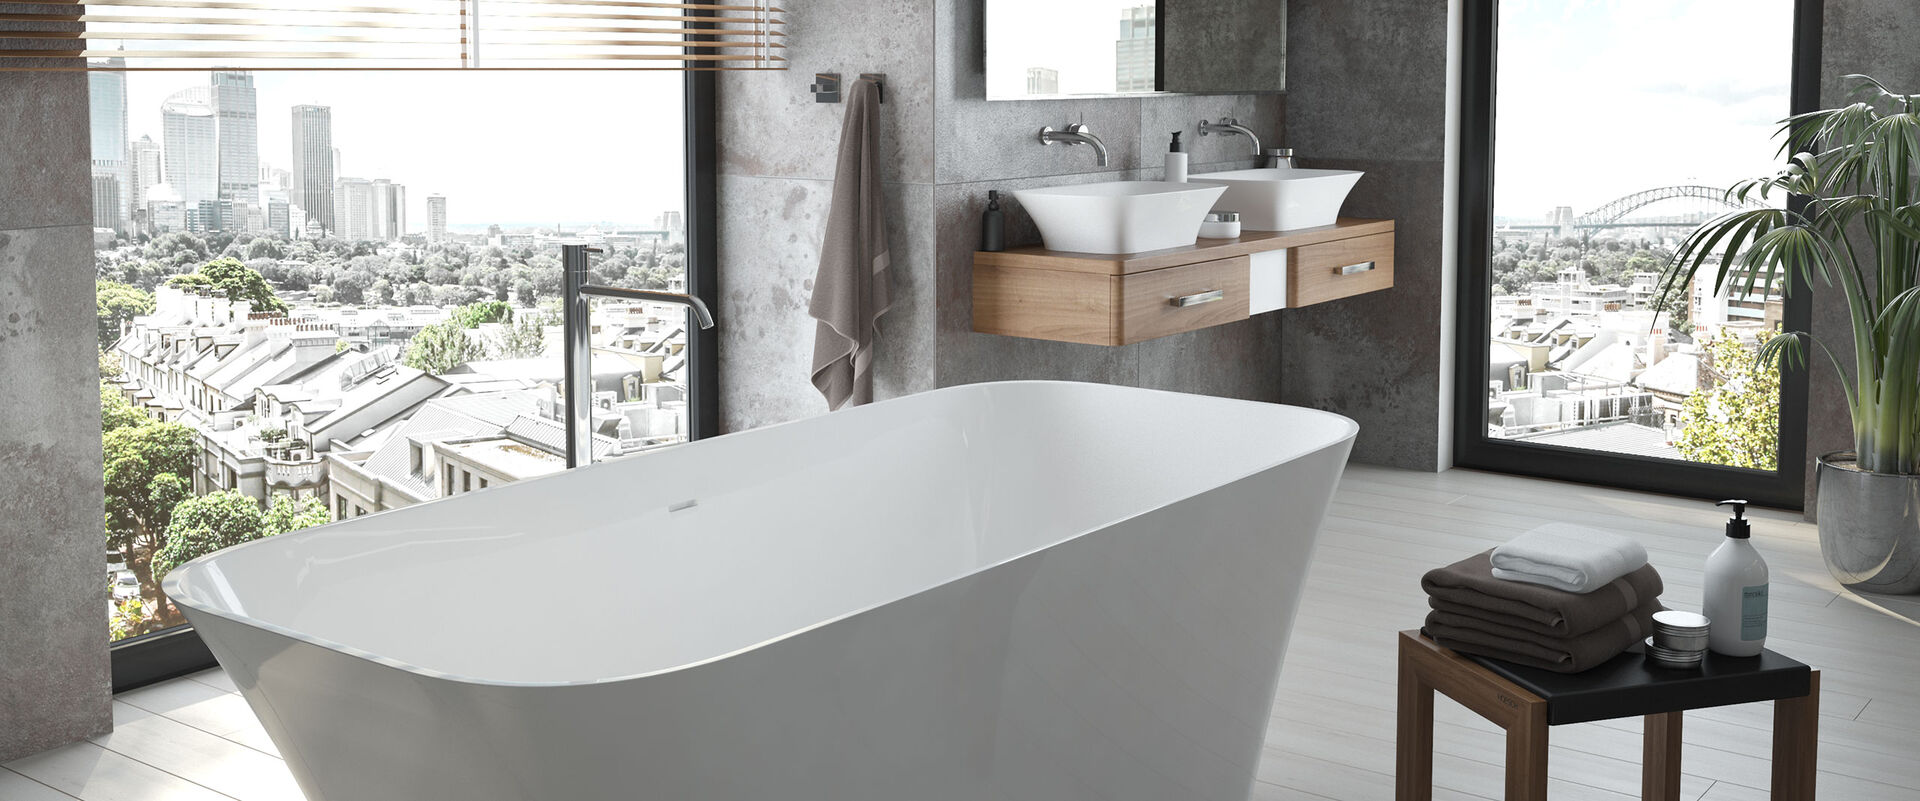 Badezimmer mit Fensteraussicht von Hoesch, das mit einer eleganten und großzügigen Freistehwanne und den Waschbecken aus der Serie Leros ausgetattet ist. Beide Produkte sind aus Solique Mineralguss gefertigt.